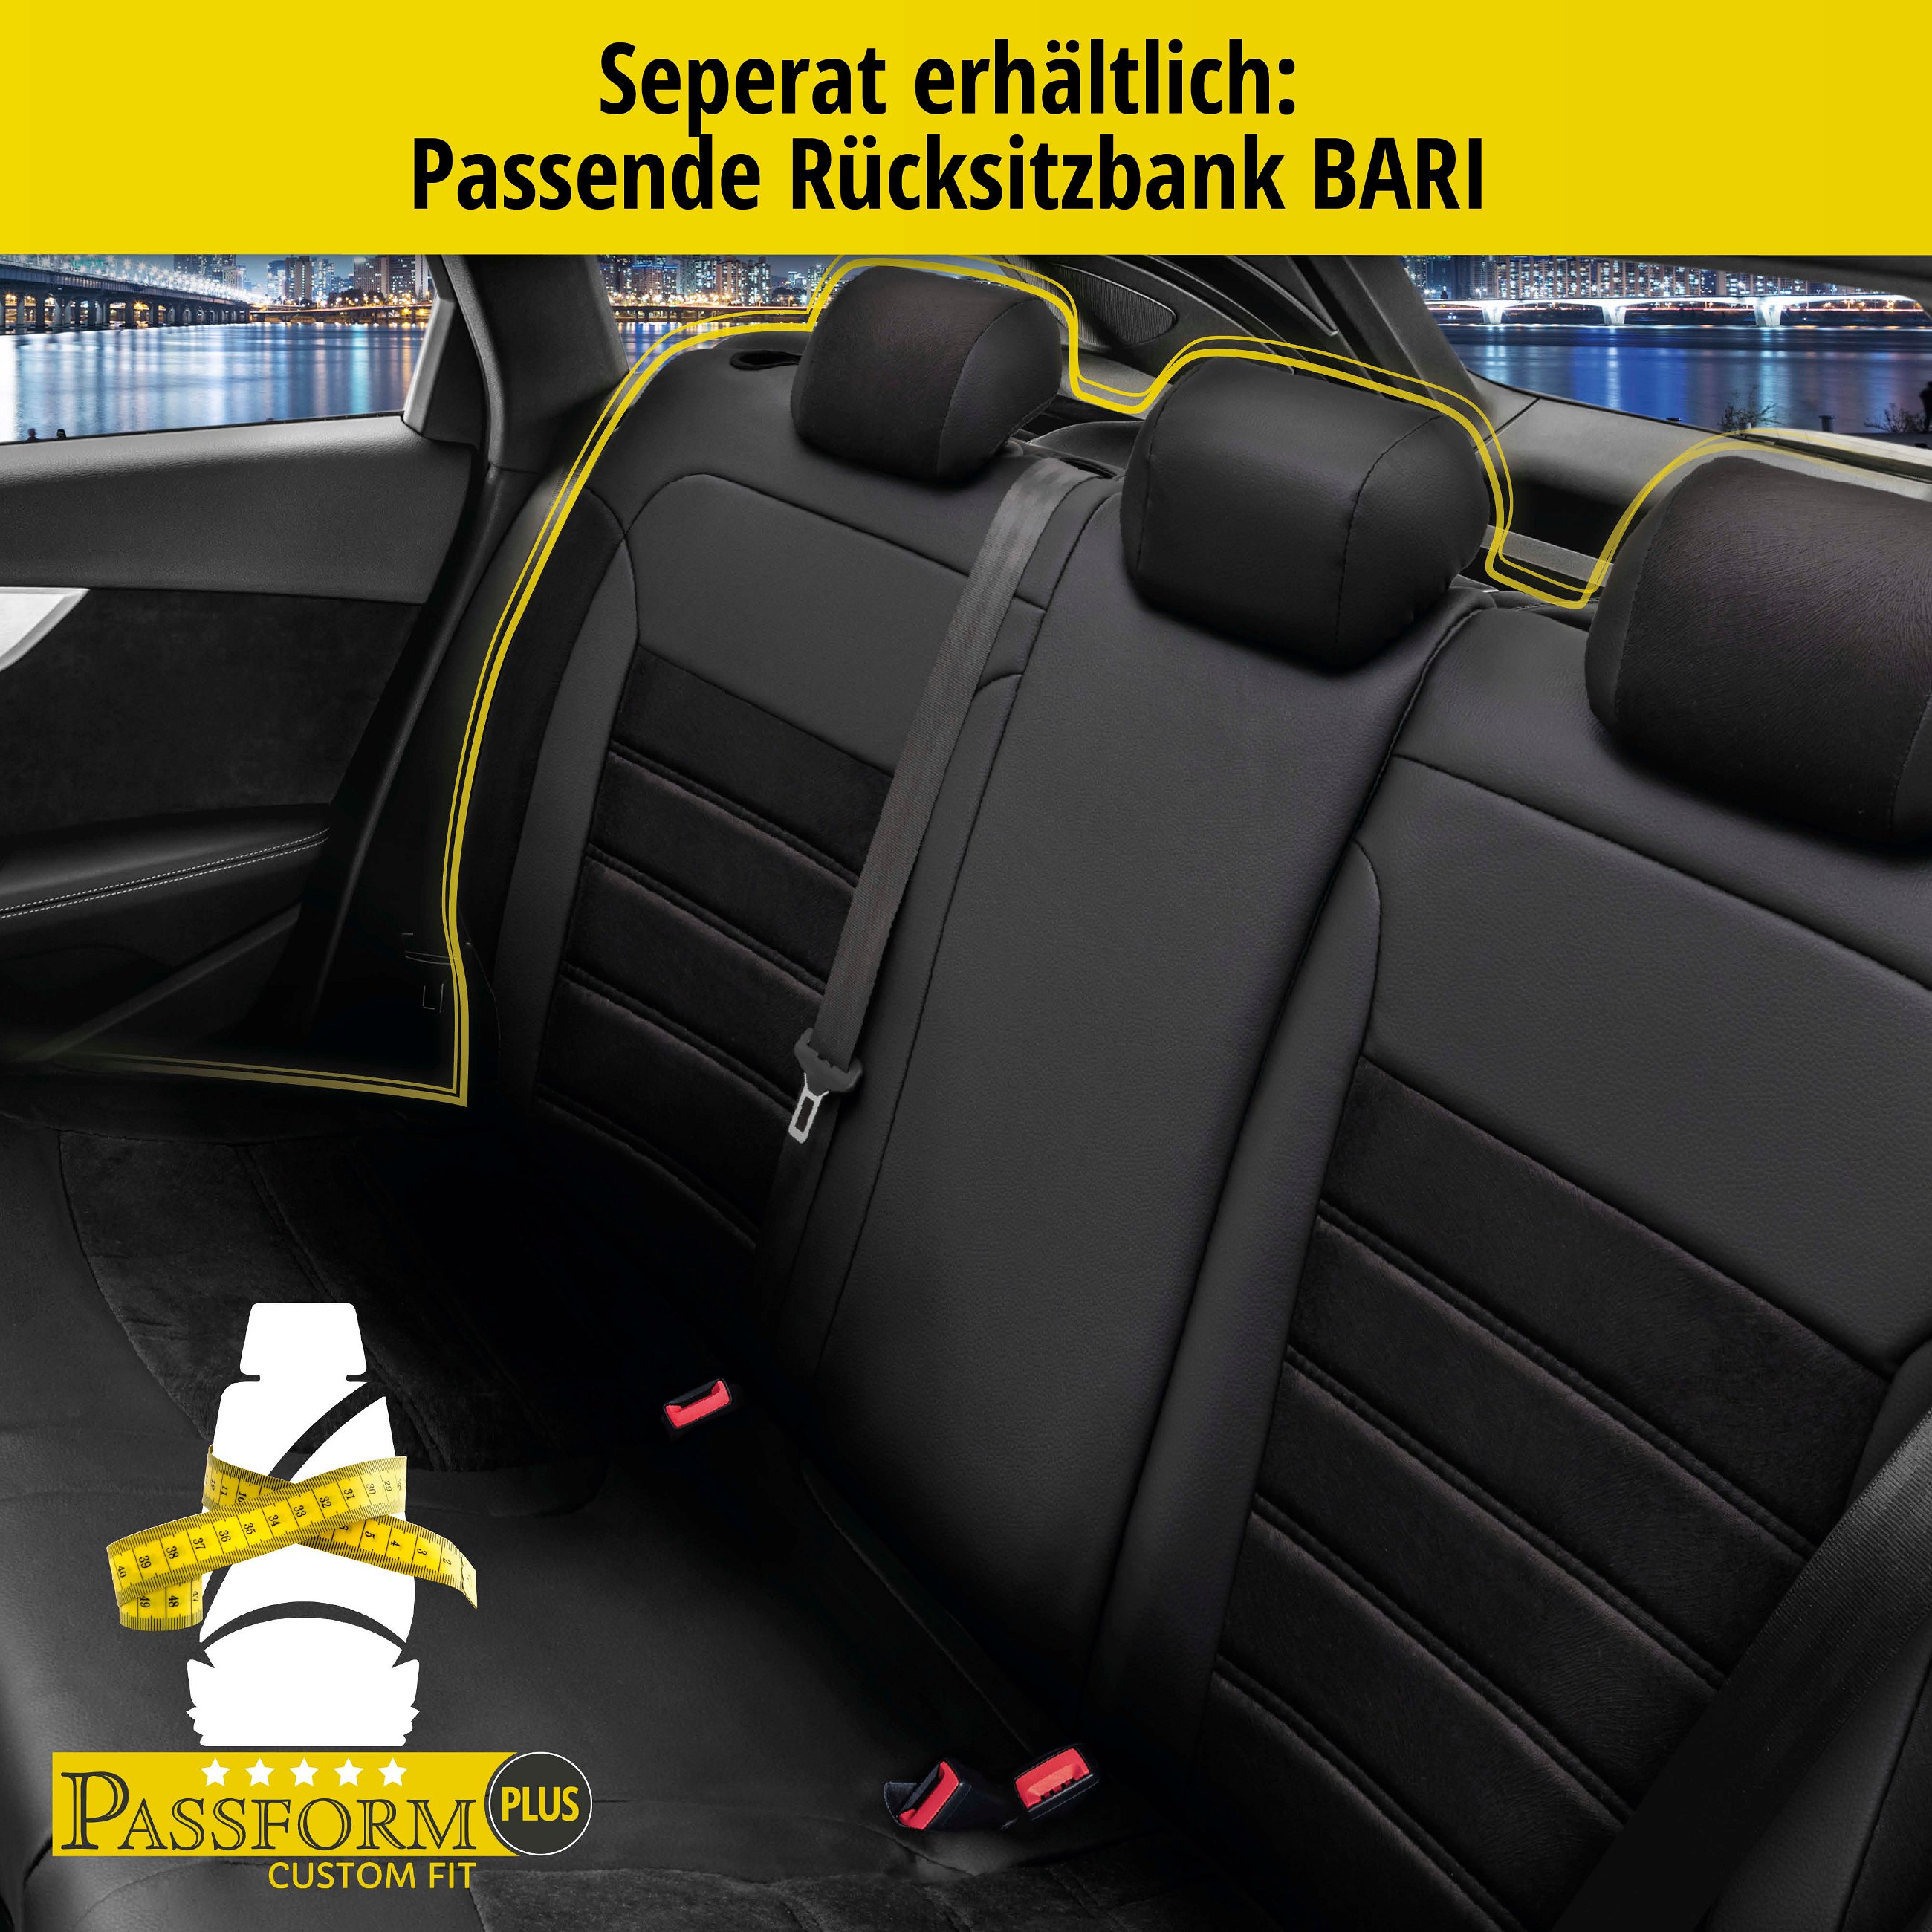 Passform Sitzbezug Bari für Fiat 500 (312) 07/2007-Heute, 2 Einzelsitzbezüge für Normalsitze